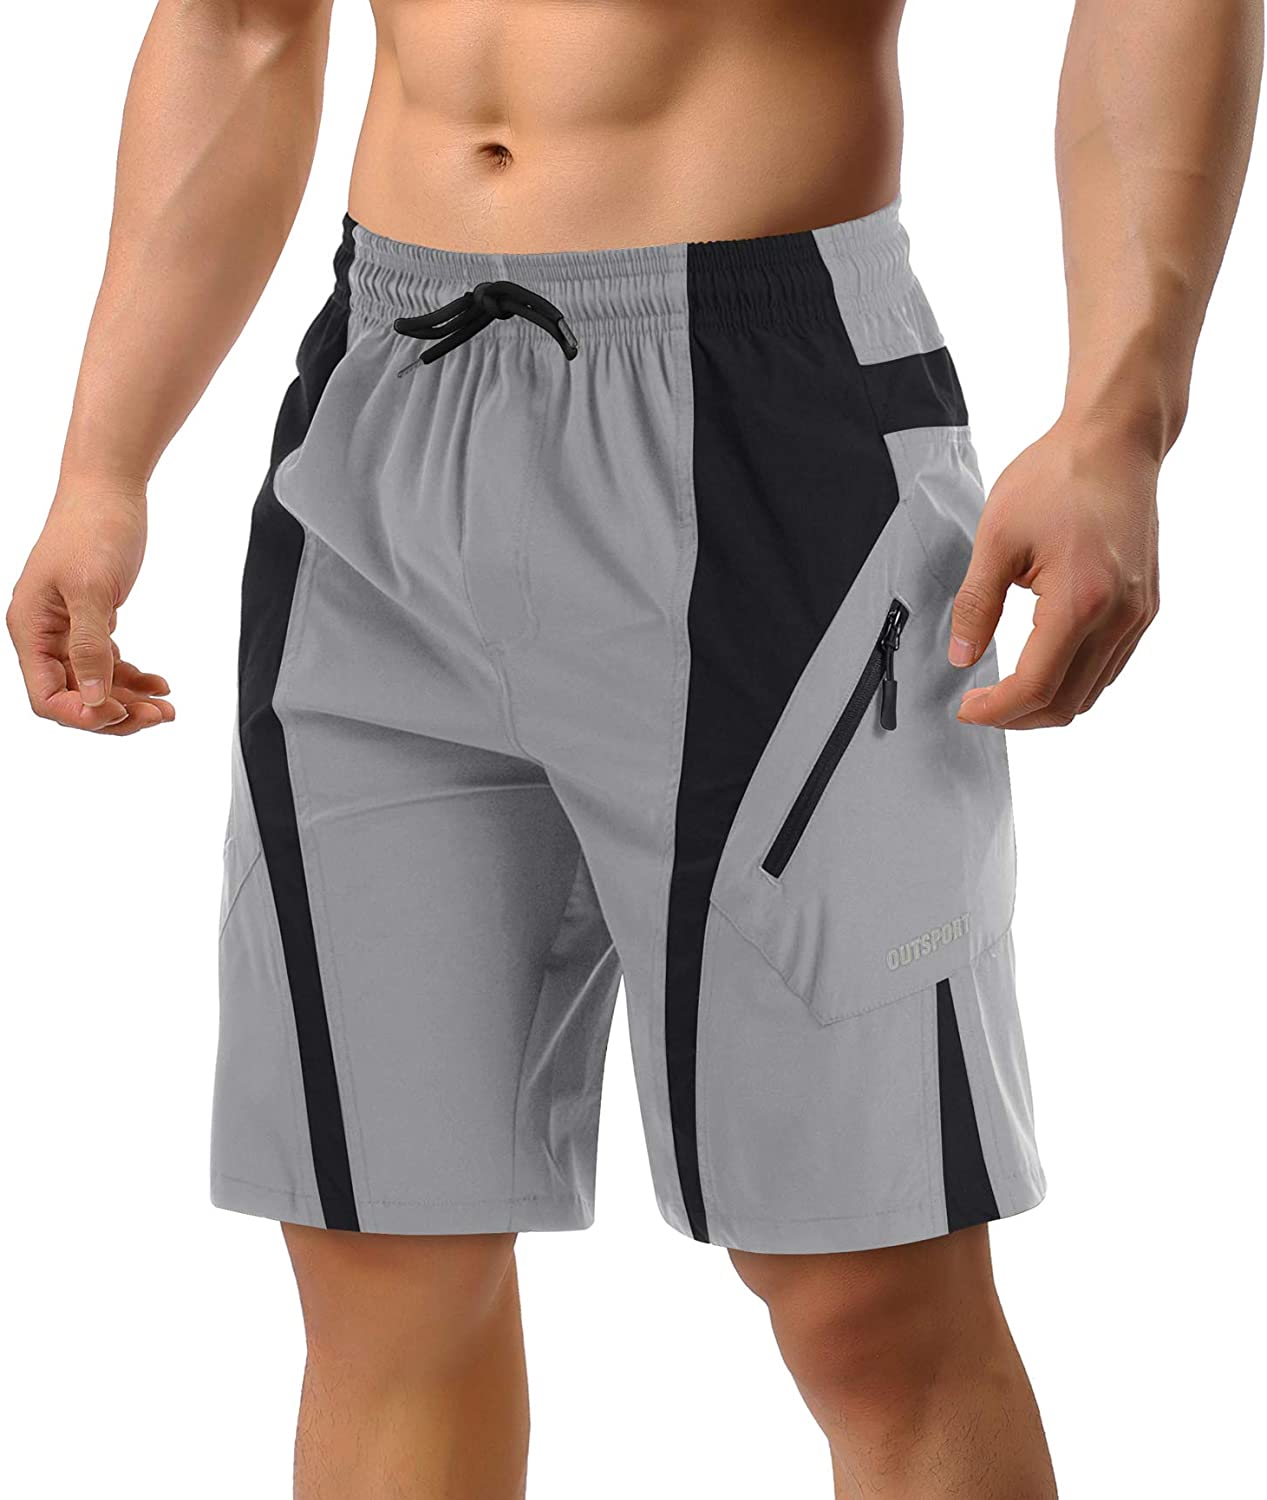 TACVASEN Reflektierende Linie Design Herren Schnell Trocknend Leichte Laufsport Fitness Shorts mit Reißverschlusstaschen